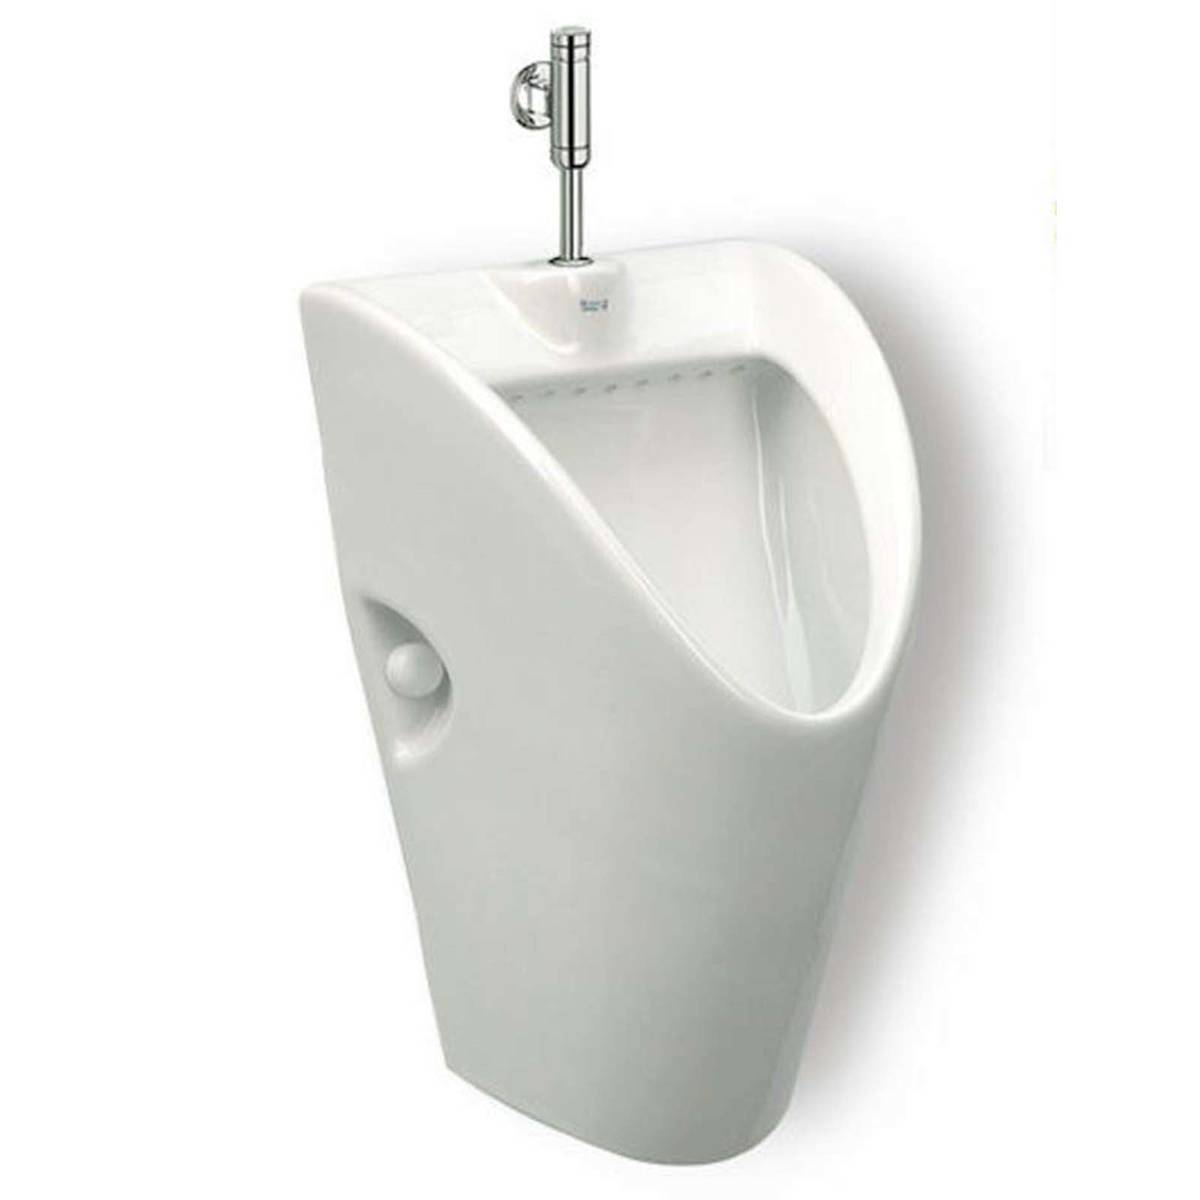 Urinal Pissoir Keramik weiß Absaugeurinal Urinalbecken Becken Zulauf von hinten 